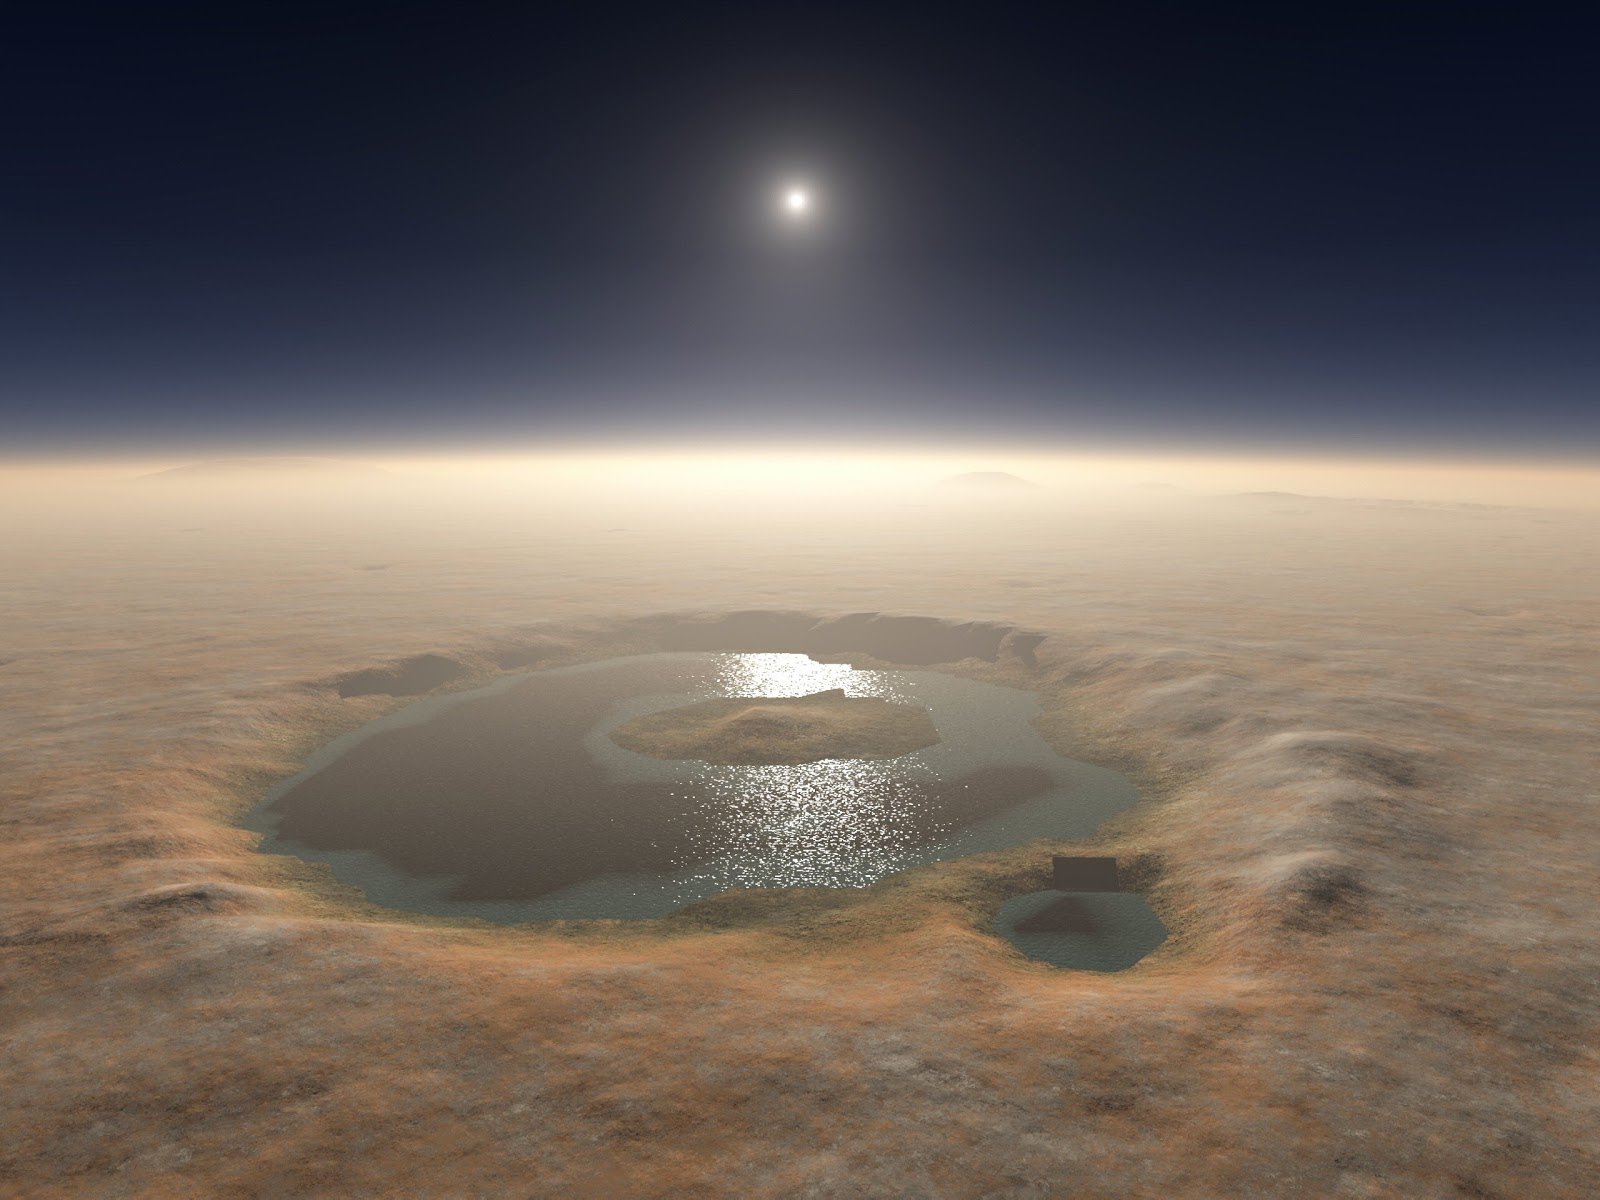 marte agua - Sonda Curiosity: Marte teve lagos e água quase pura para beber em uma data não longínqua